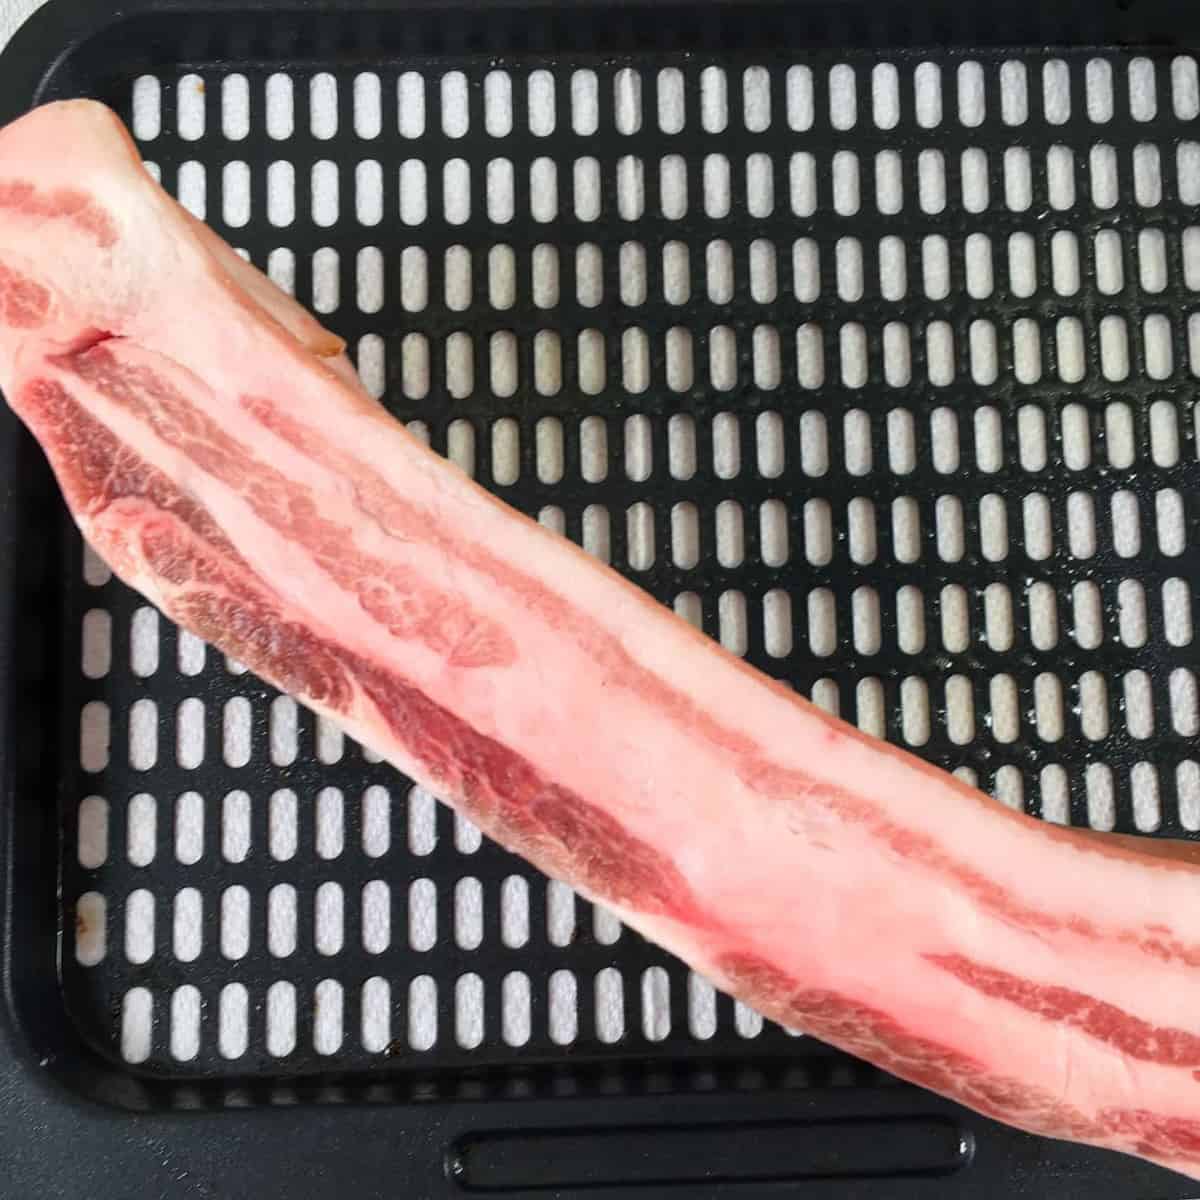 pork belly looks like bacon on side